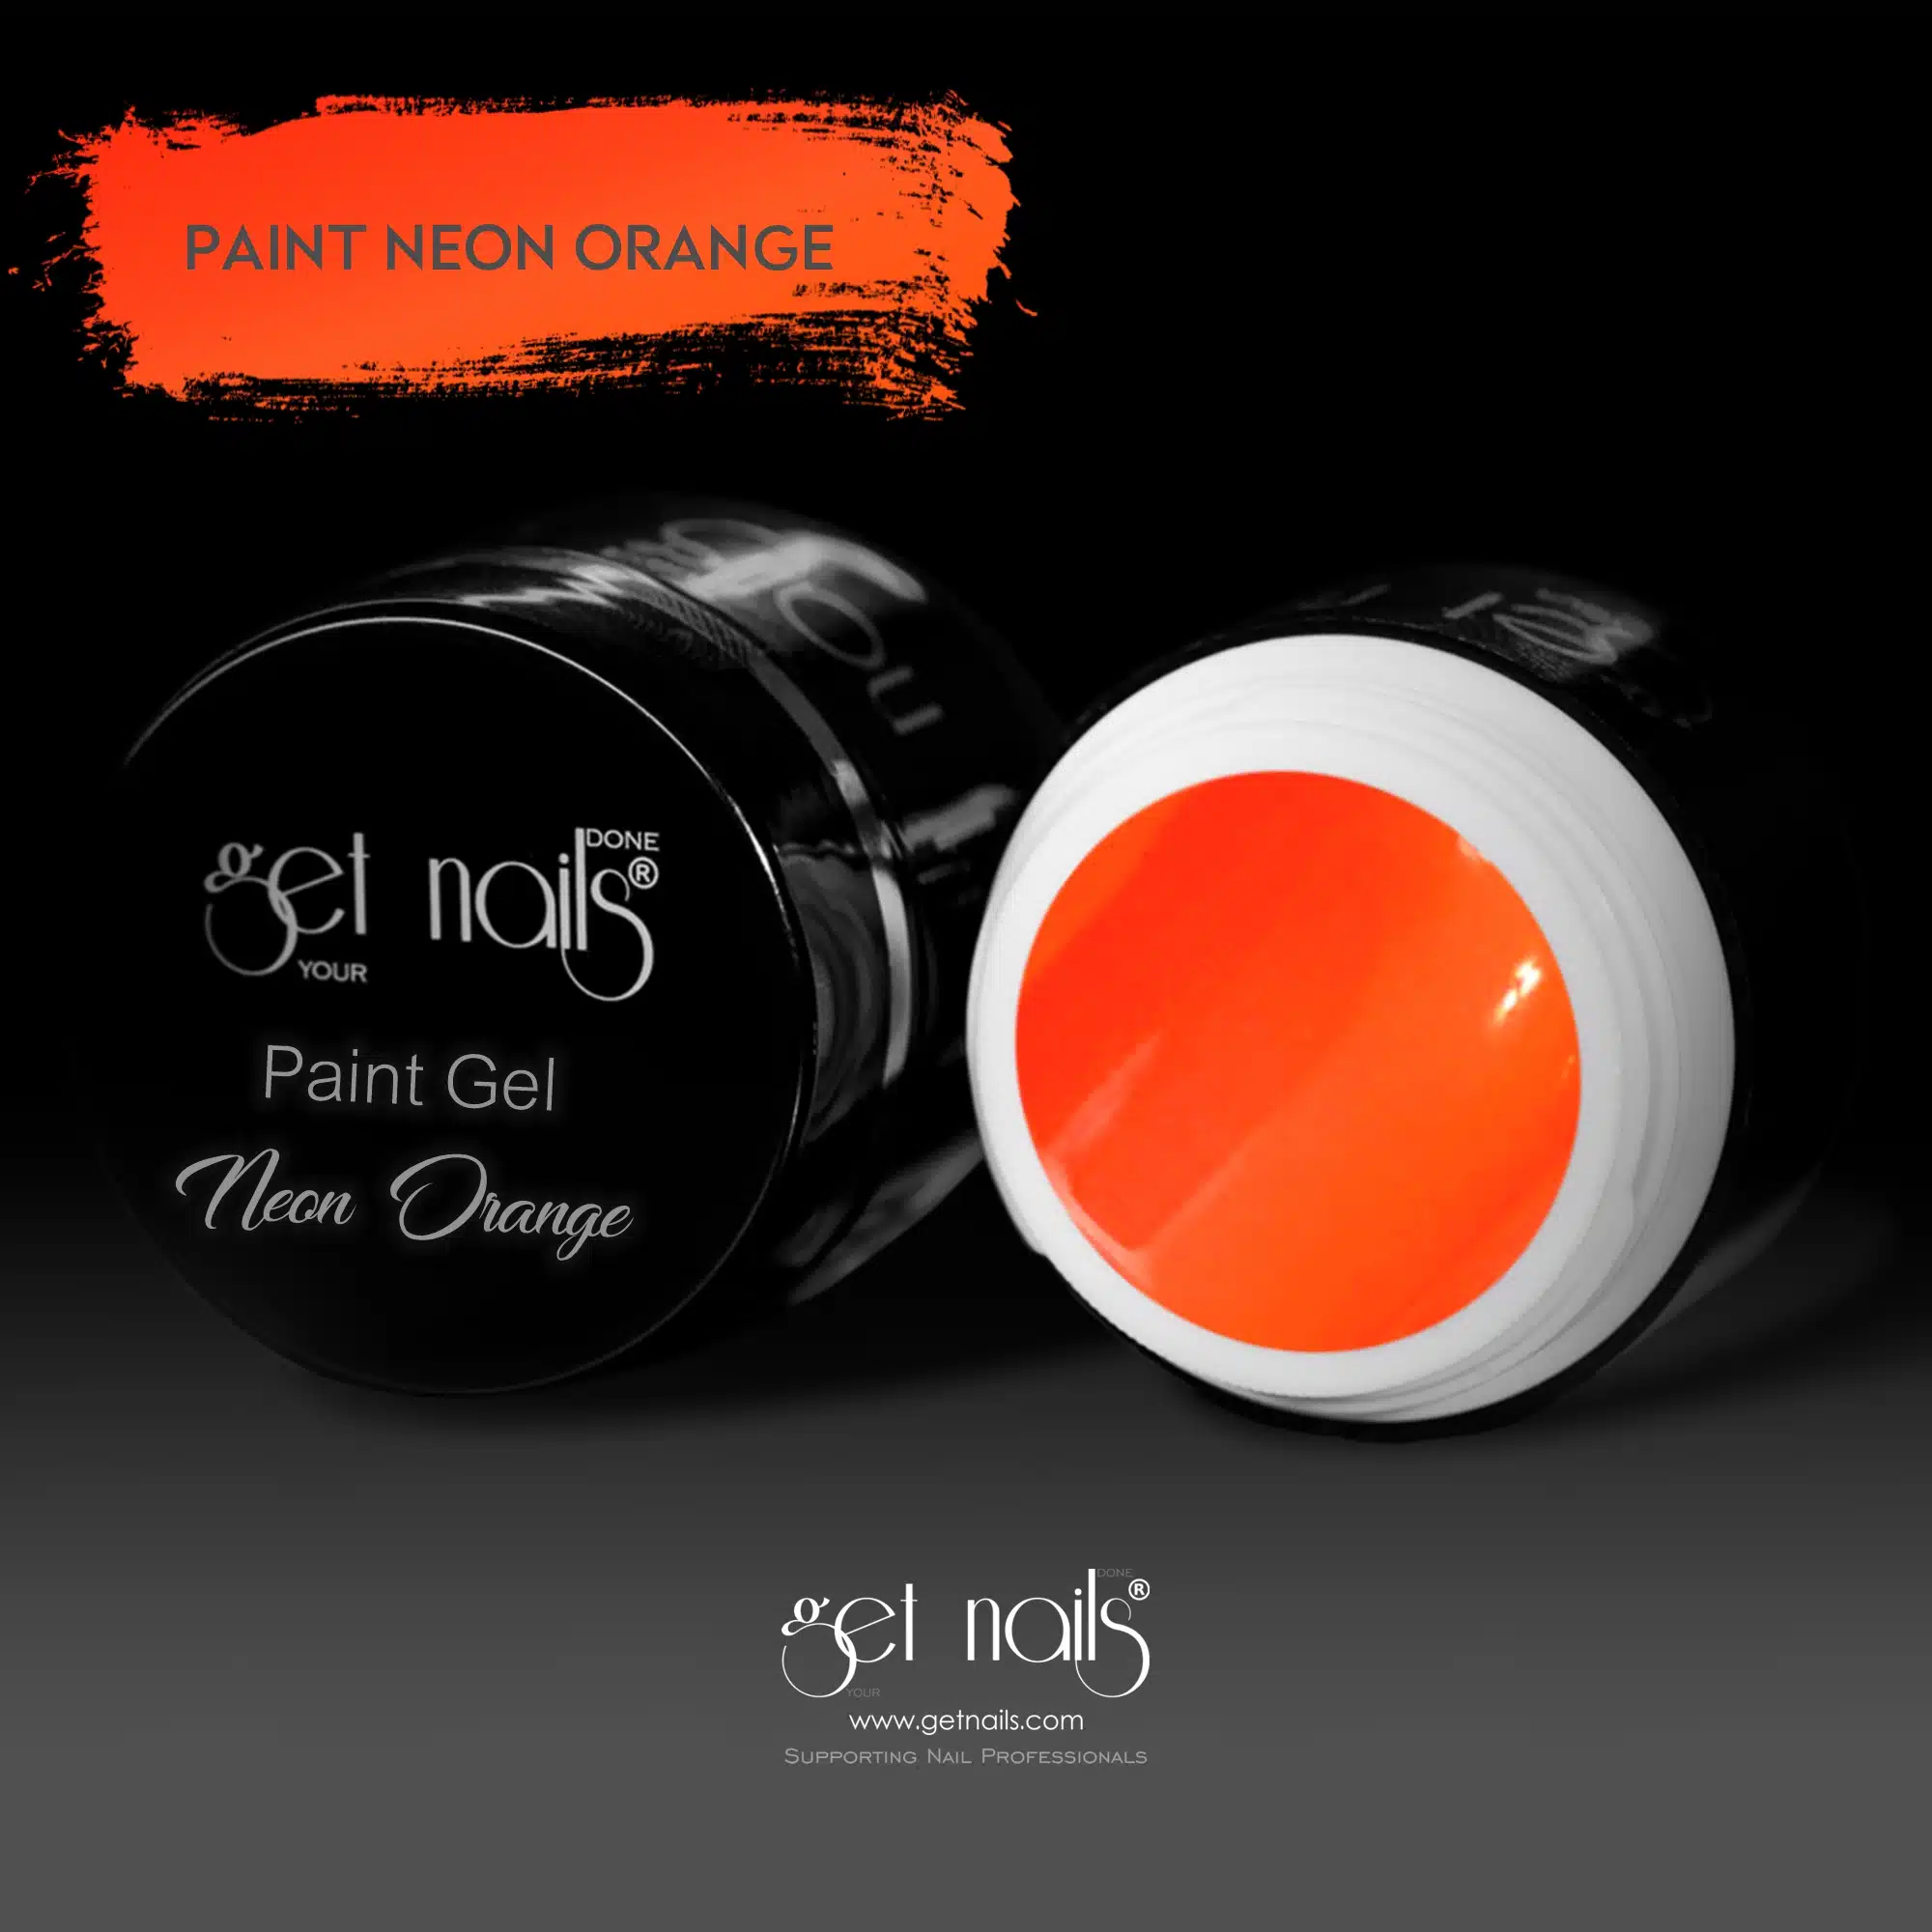 Get Nails Austria - Gel per pittura Neon Orange 5g